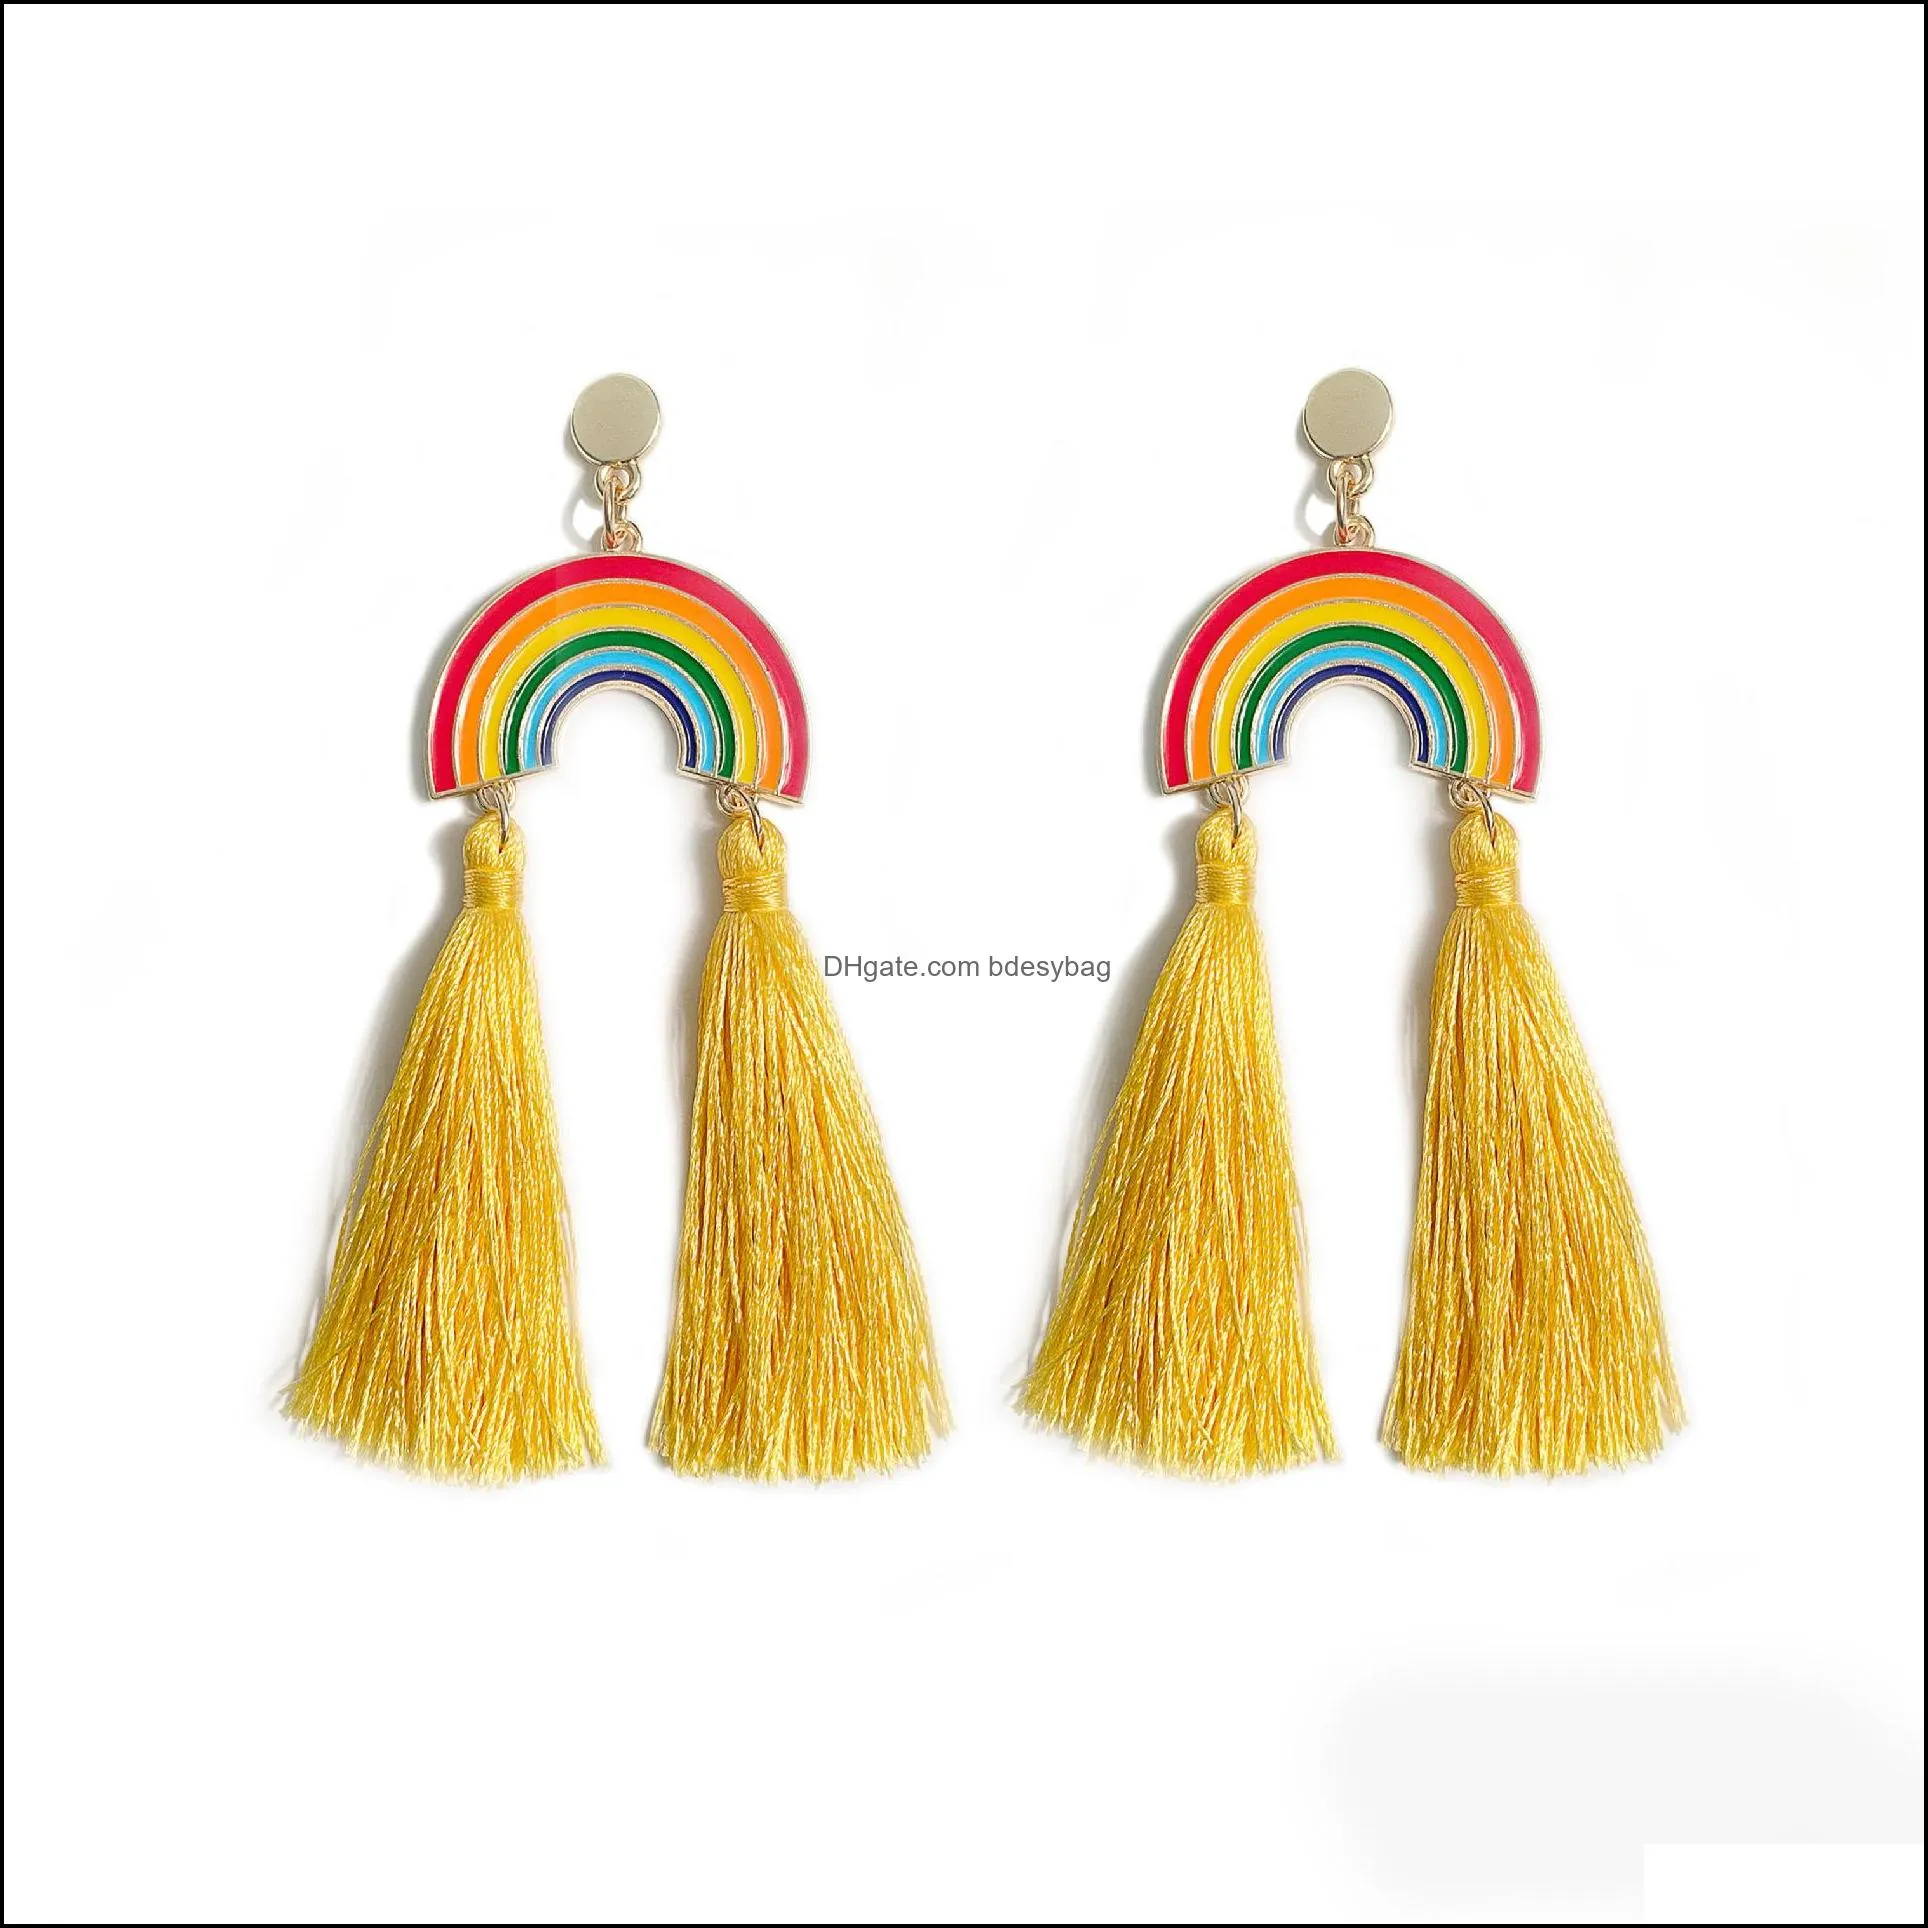 bohemia rainbow tassel earrings dangle drop stud ear rings for women fashion earring jewelry will and sandy gift